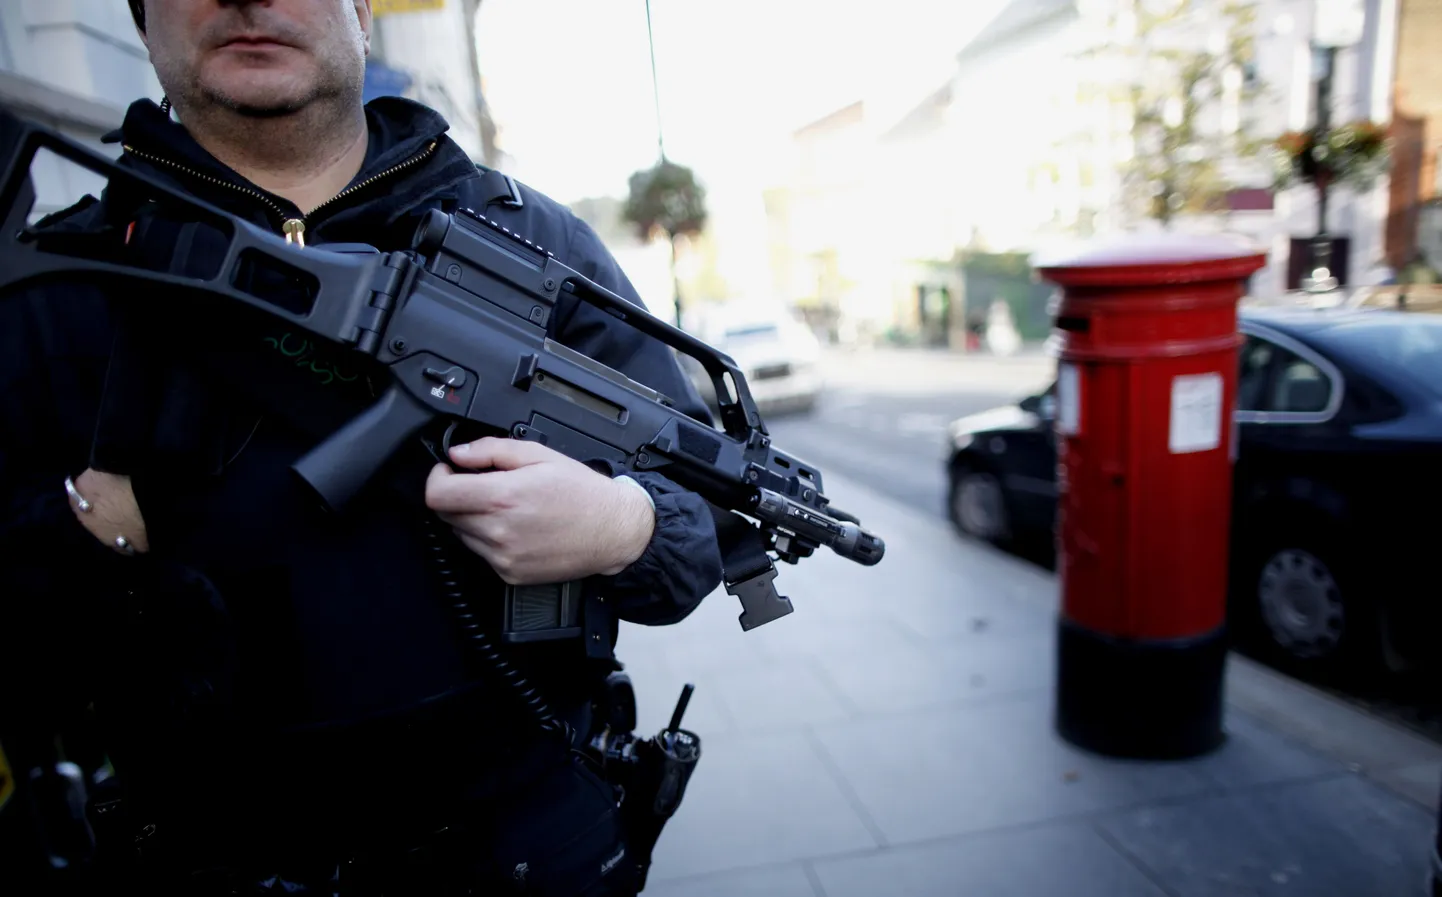 Londonis arreteeriti neli isikut, keda kahtlustatakse terrorismis